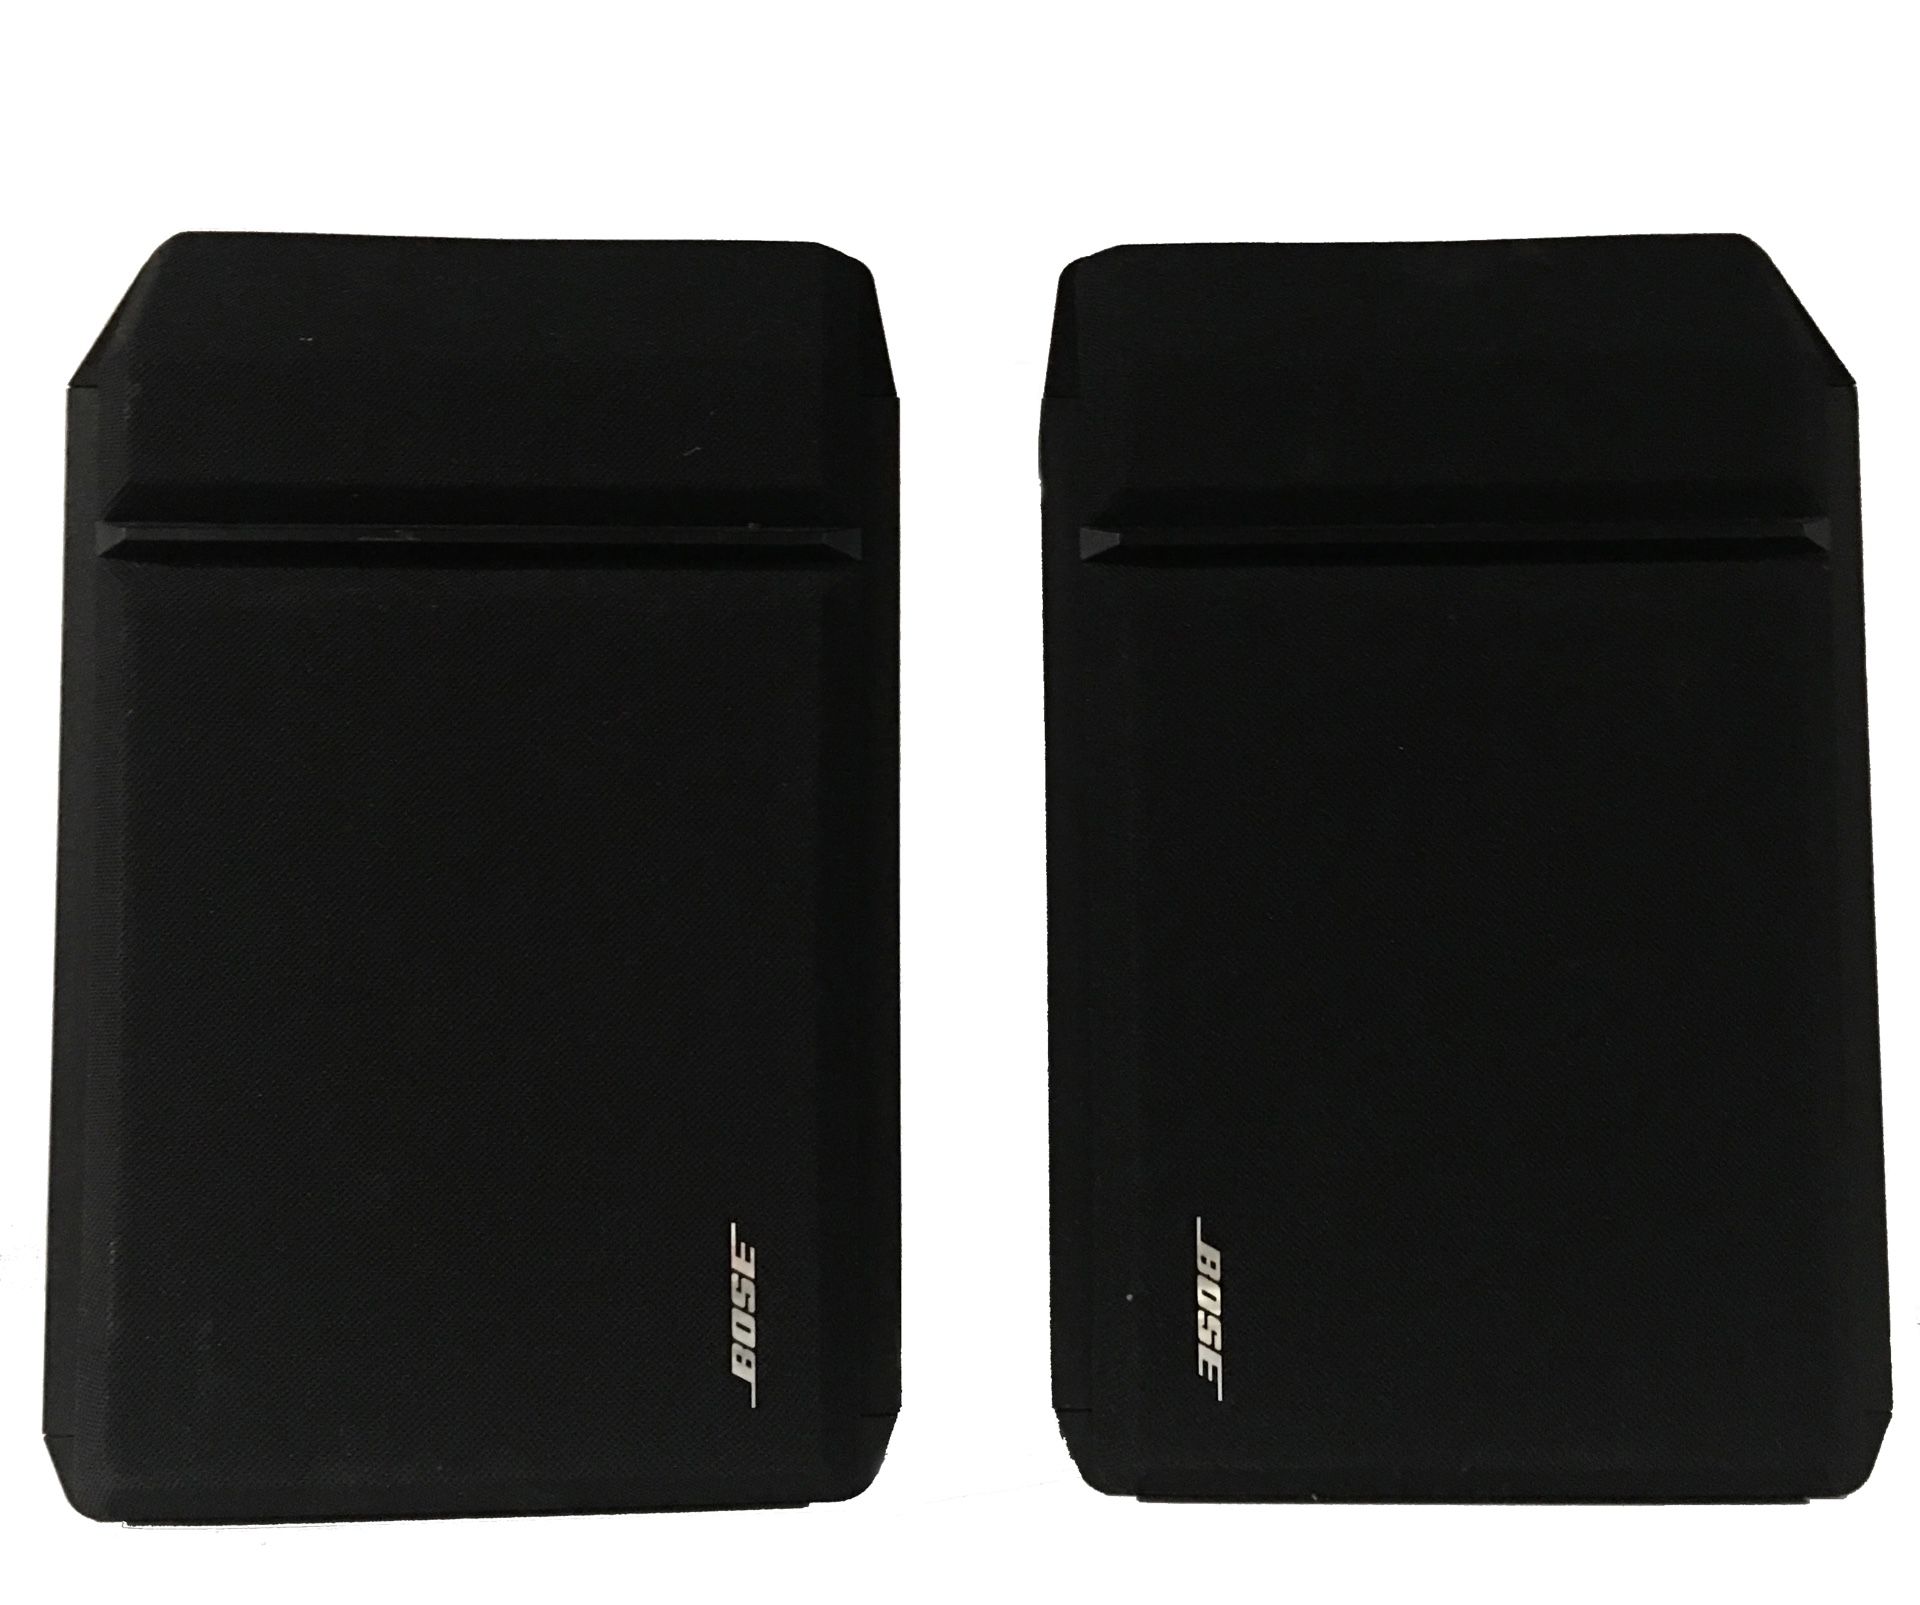 Pair of Bose 201 Series IV speakers